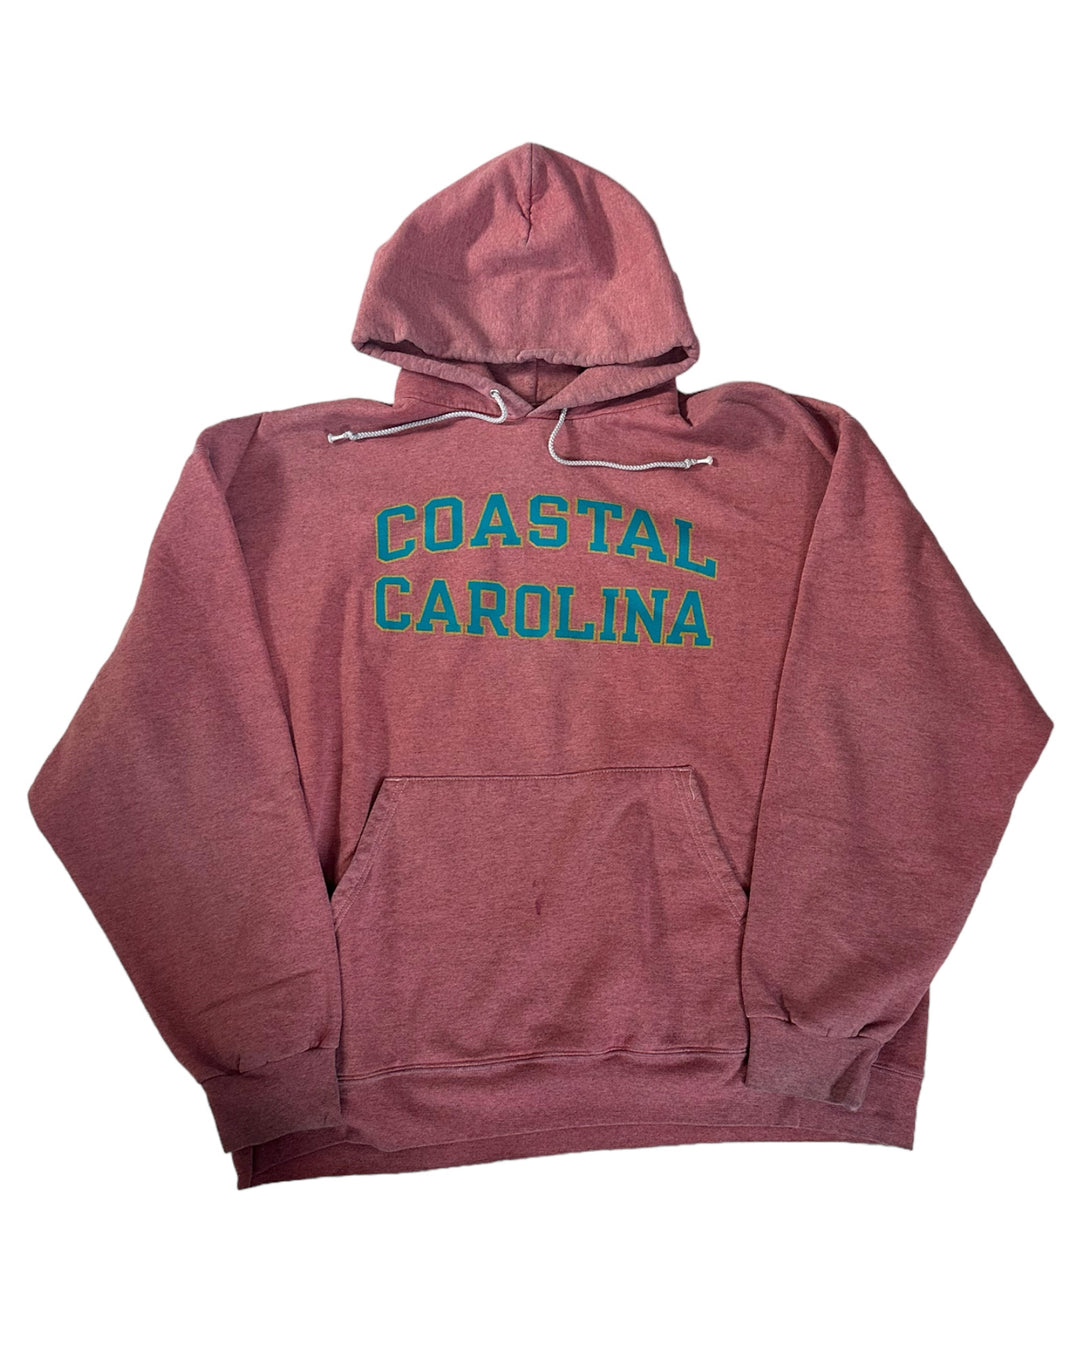 Coastal Carolina Vintage Sweatshirt